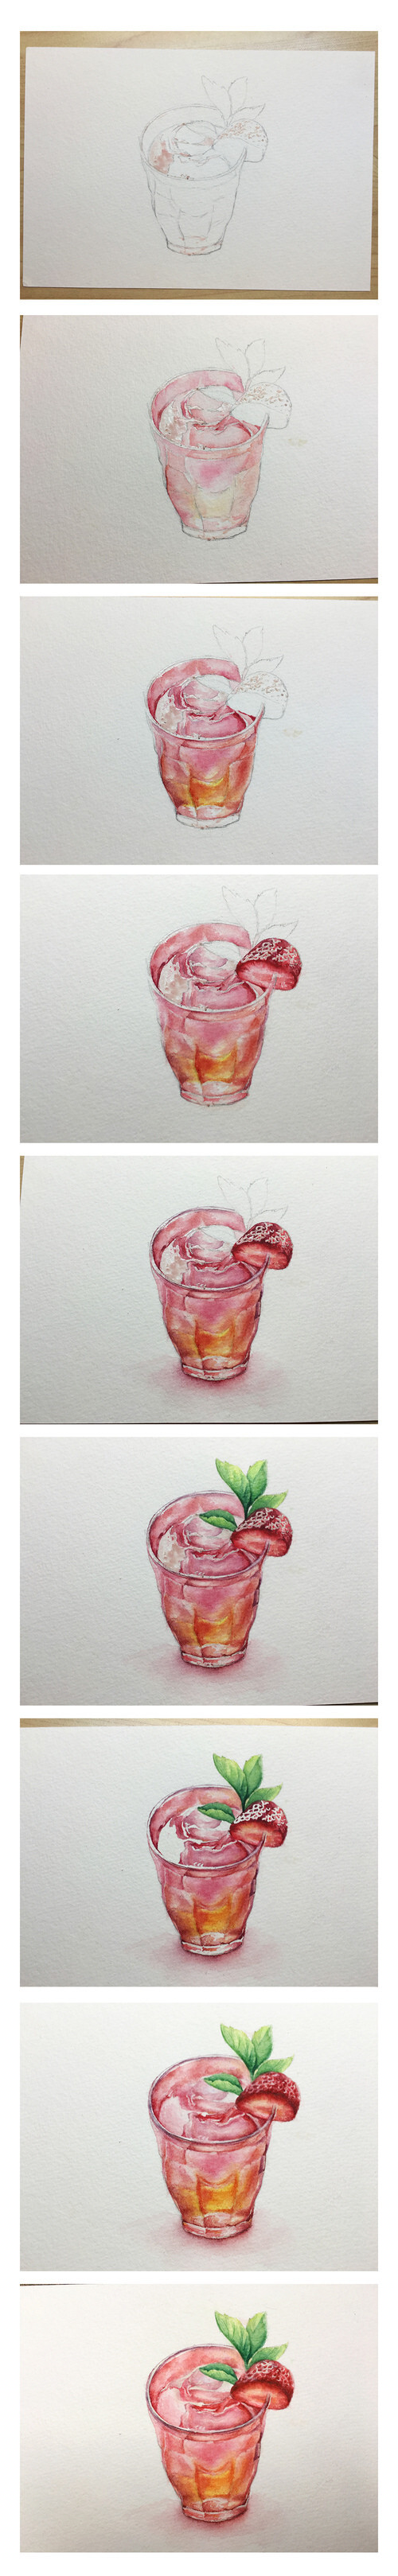 草莓饮料 食物 饮料 贴纸 手账 字体 原稿 线稿 水粉 彩铅 涂鸦 水彩